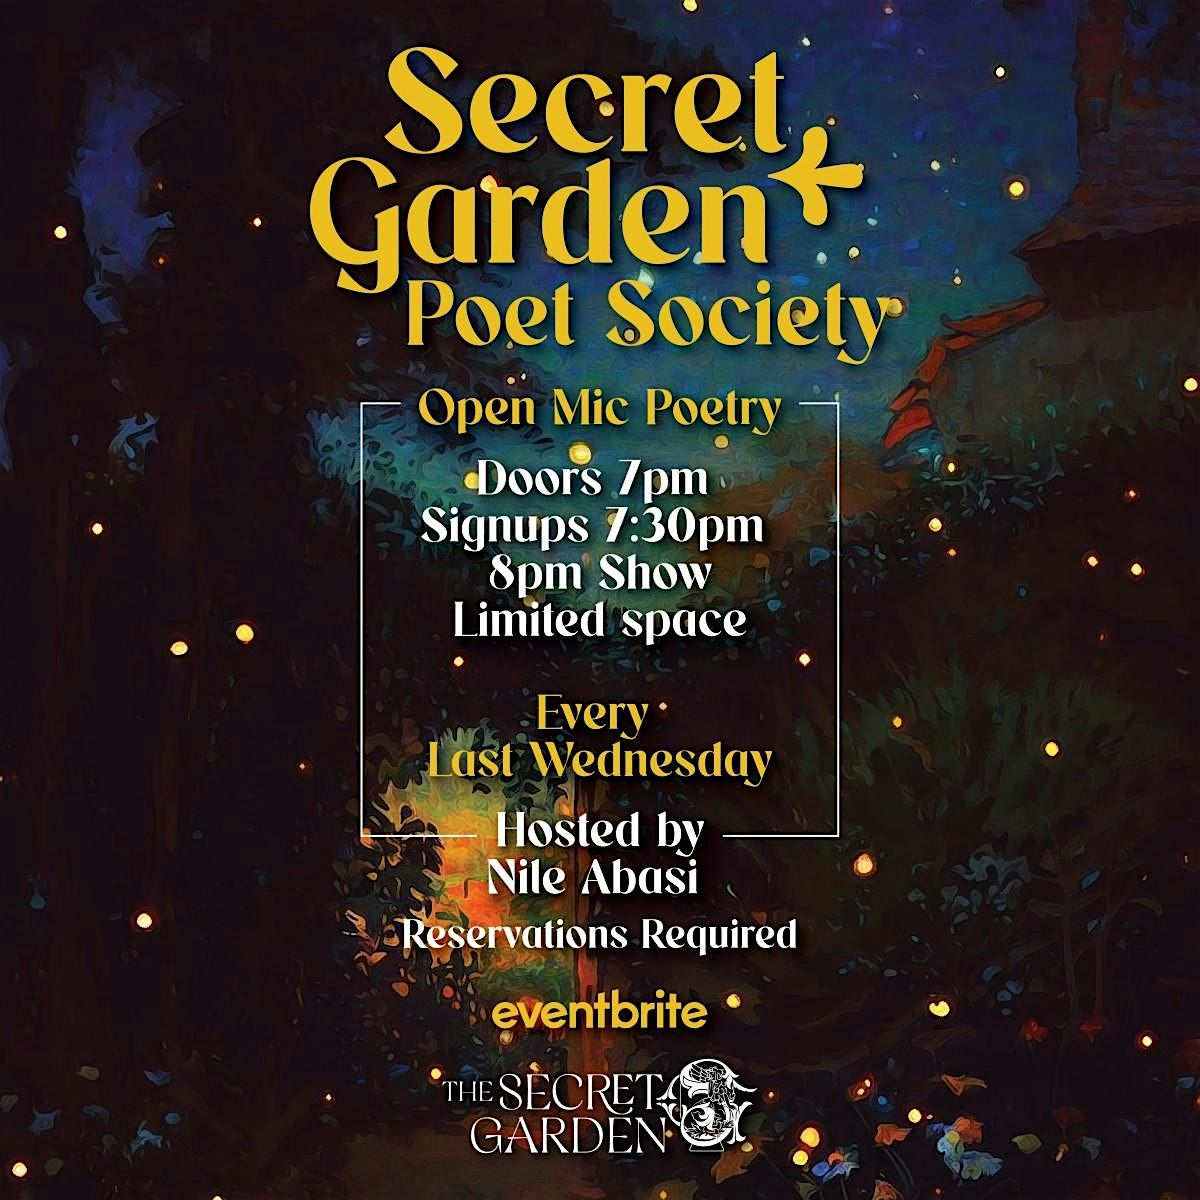 The Secret Garden Poet Society open mic